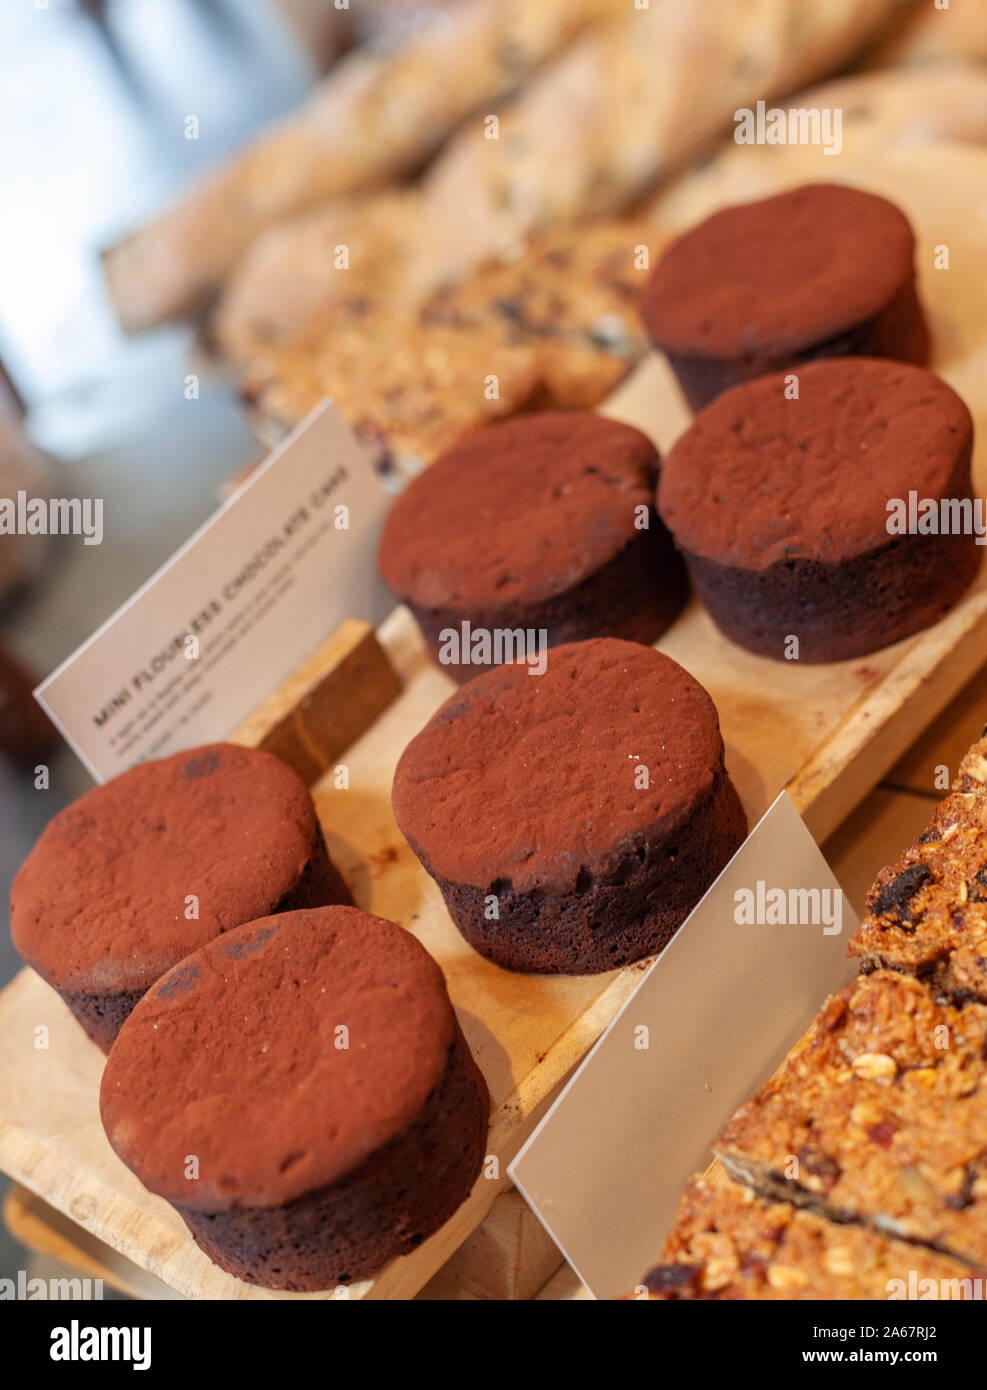 Un vassoio di mini flourless torte al cioccolato sul display all'interno di un panificio. Foto Stock